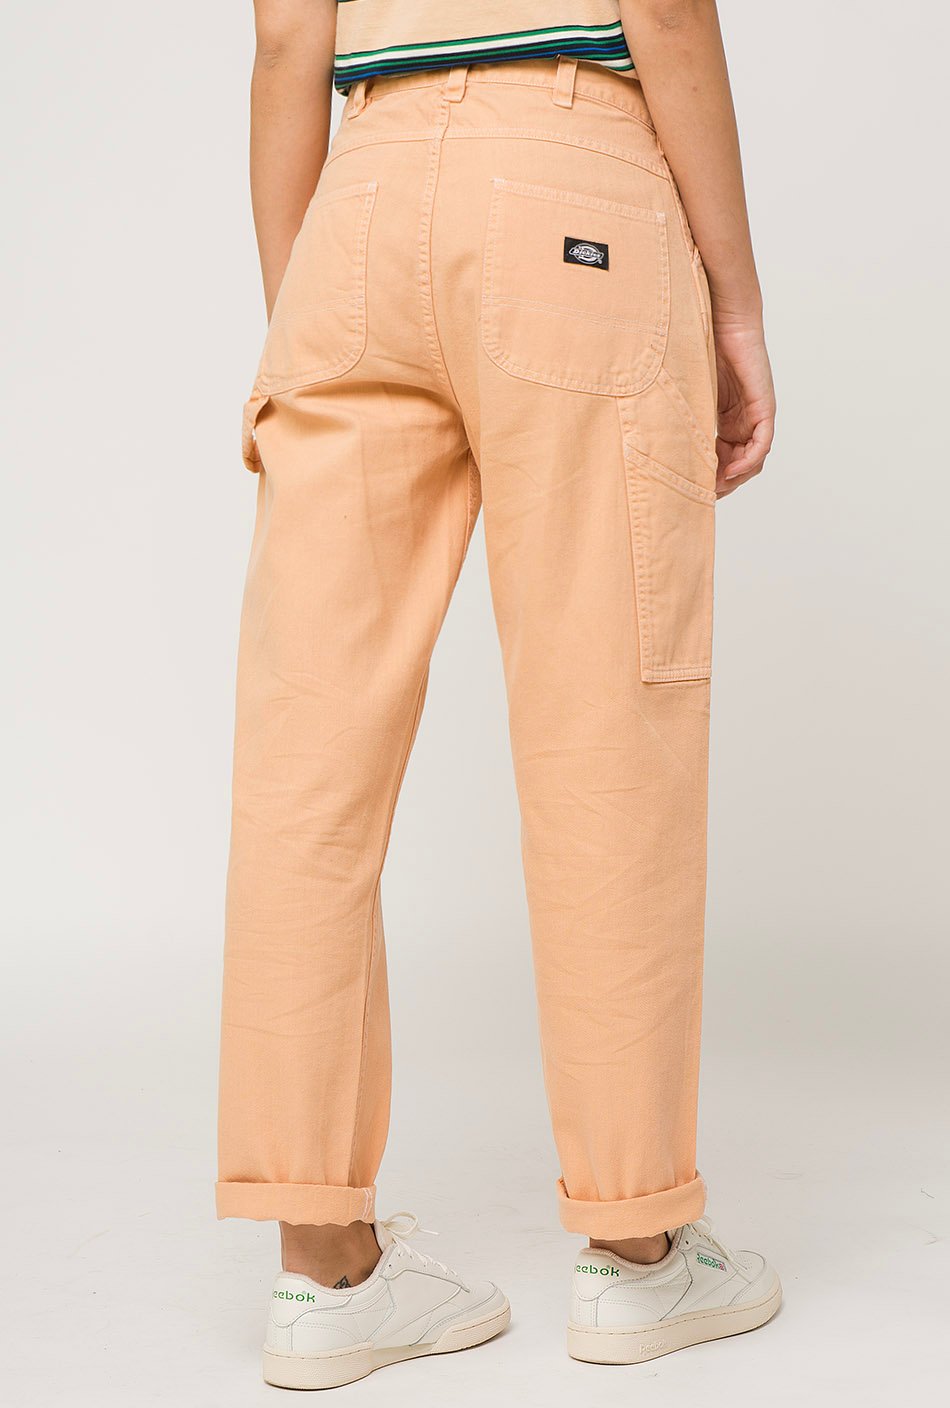 Pantalones Dickies Lilburn Peach